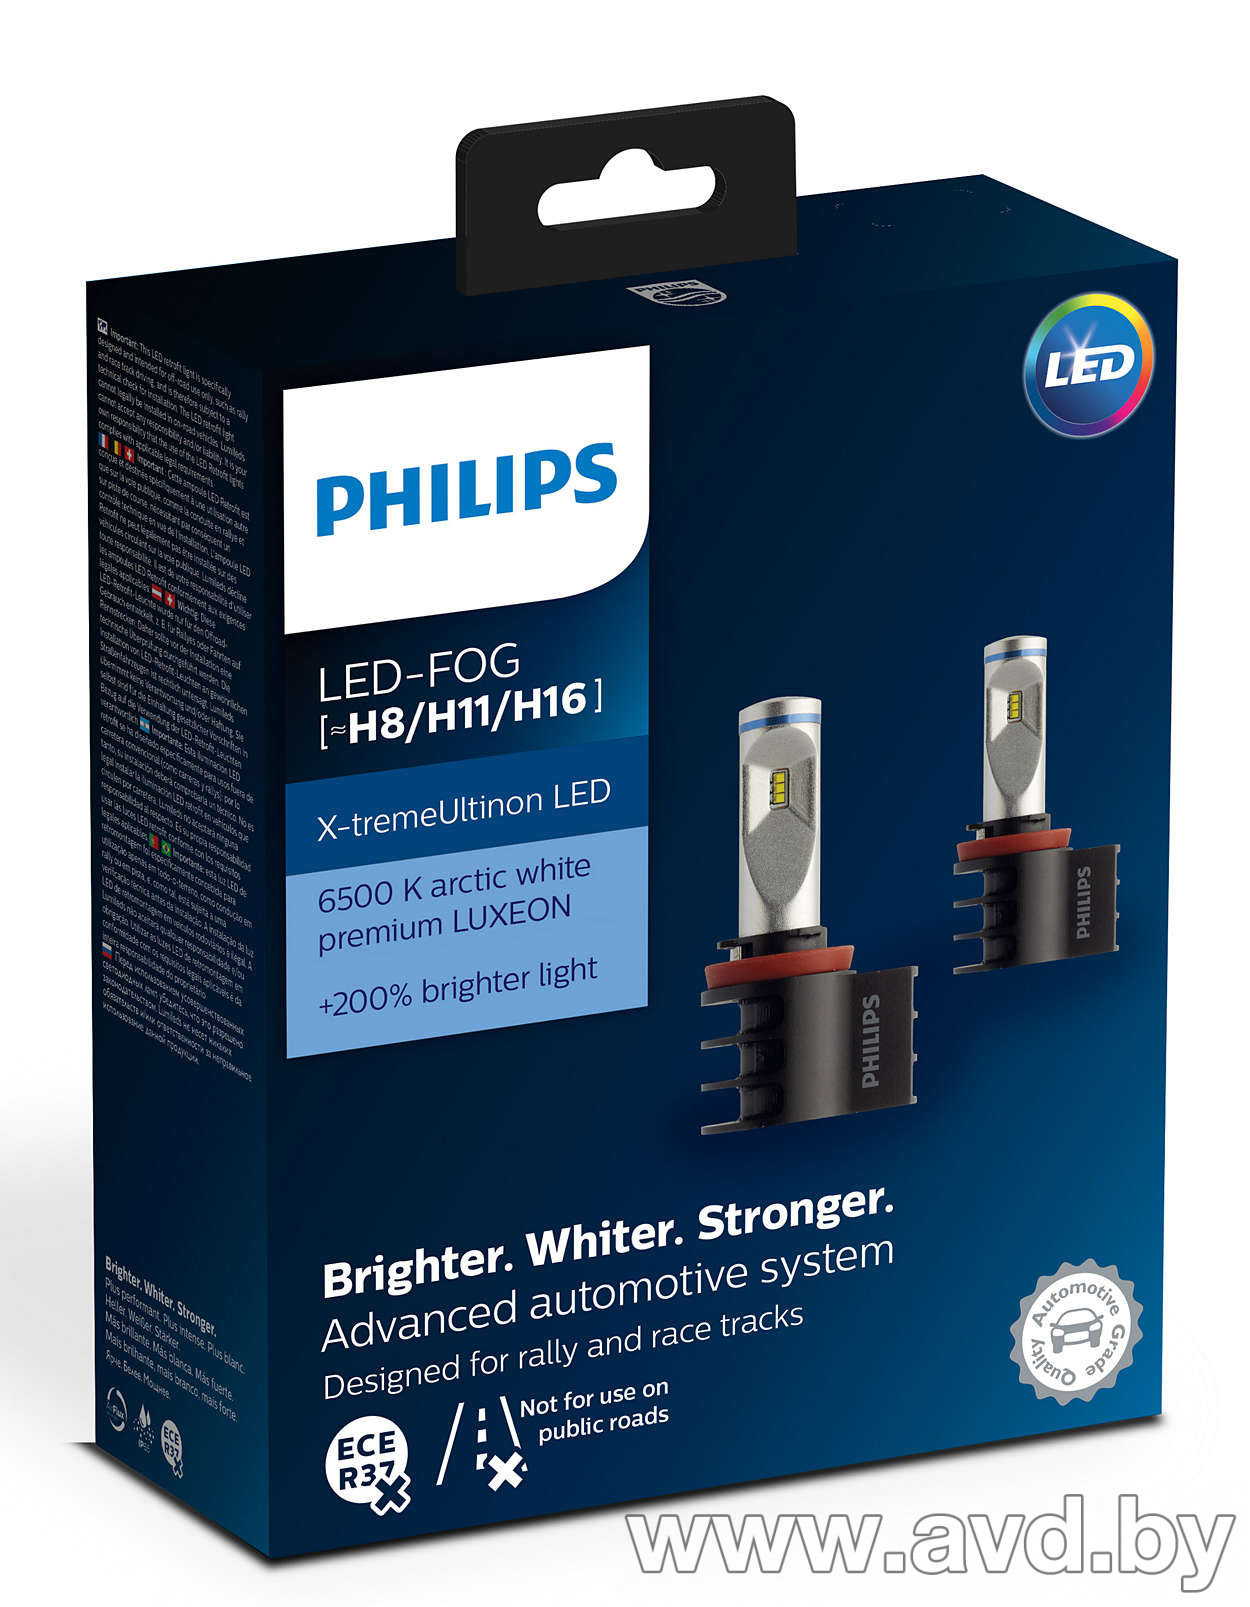 Светодиодные филипс купить. Philips led Fog h8/h11/h16. Led лампы Philips x-treme Ultinon h7. Лампа светодиодная Philips h4 x-treme Ultinon led 6500k +200%. Светодиодные лампы h7 Филипс для ближнего света.